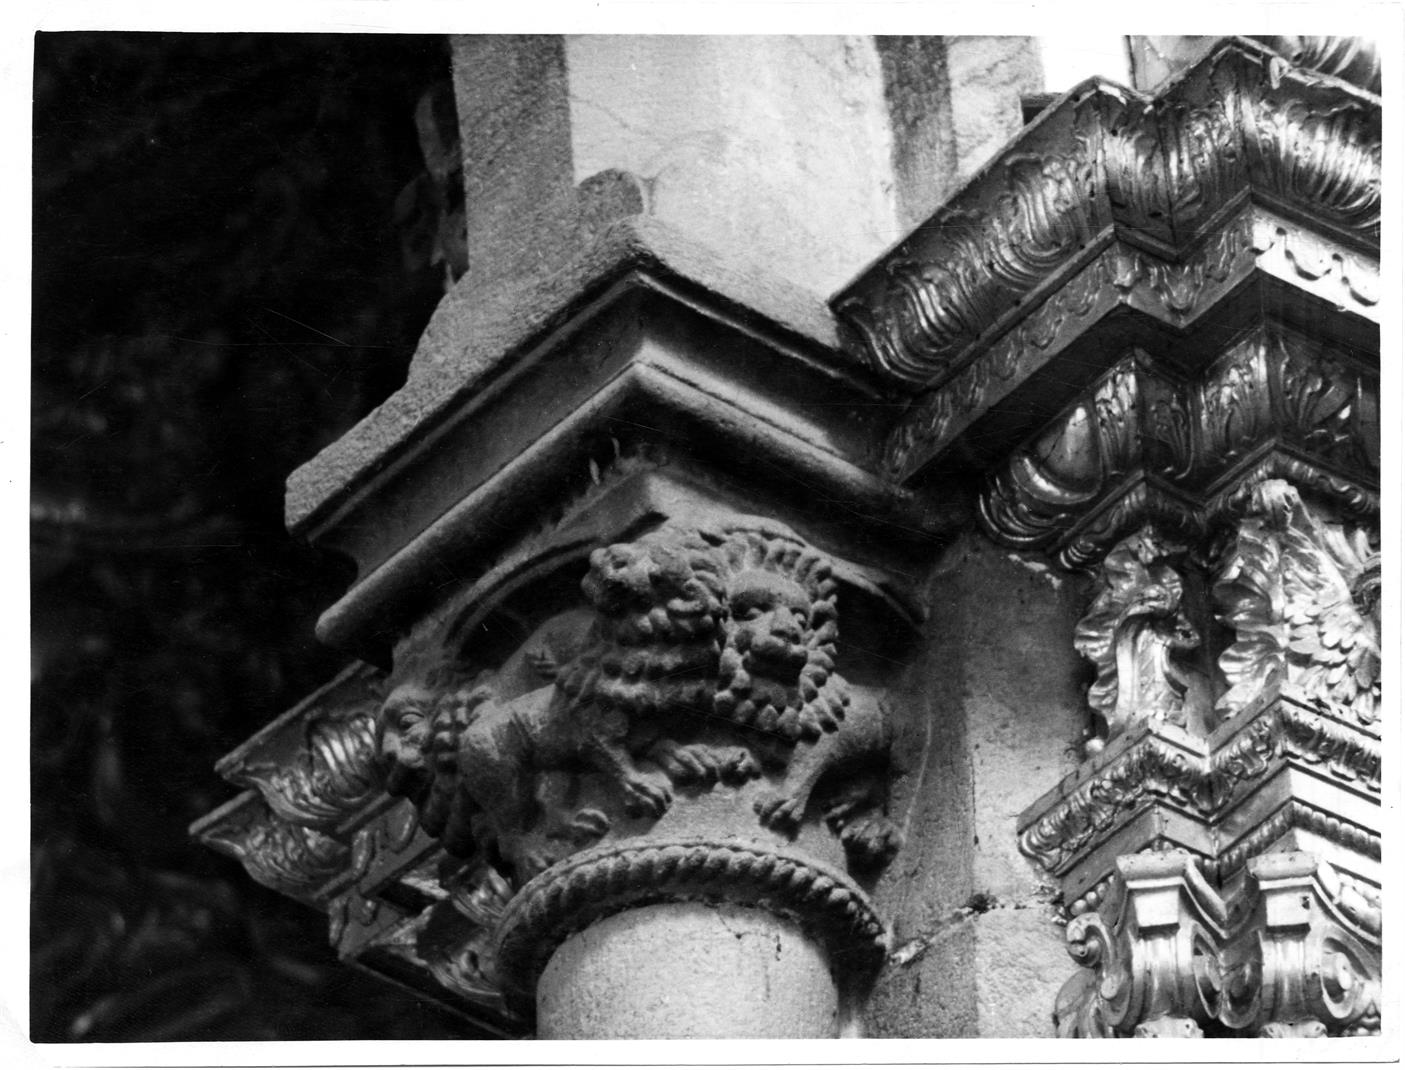 Aspectos arqueológicos e artísticos da cidade do Porto : capitel da igreja de São Francisco